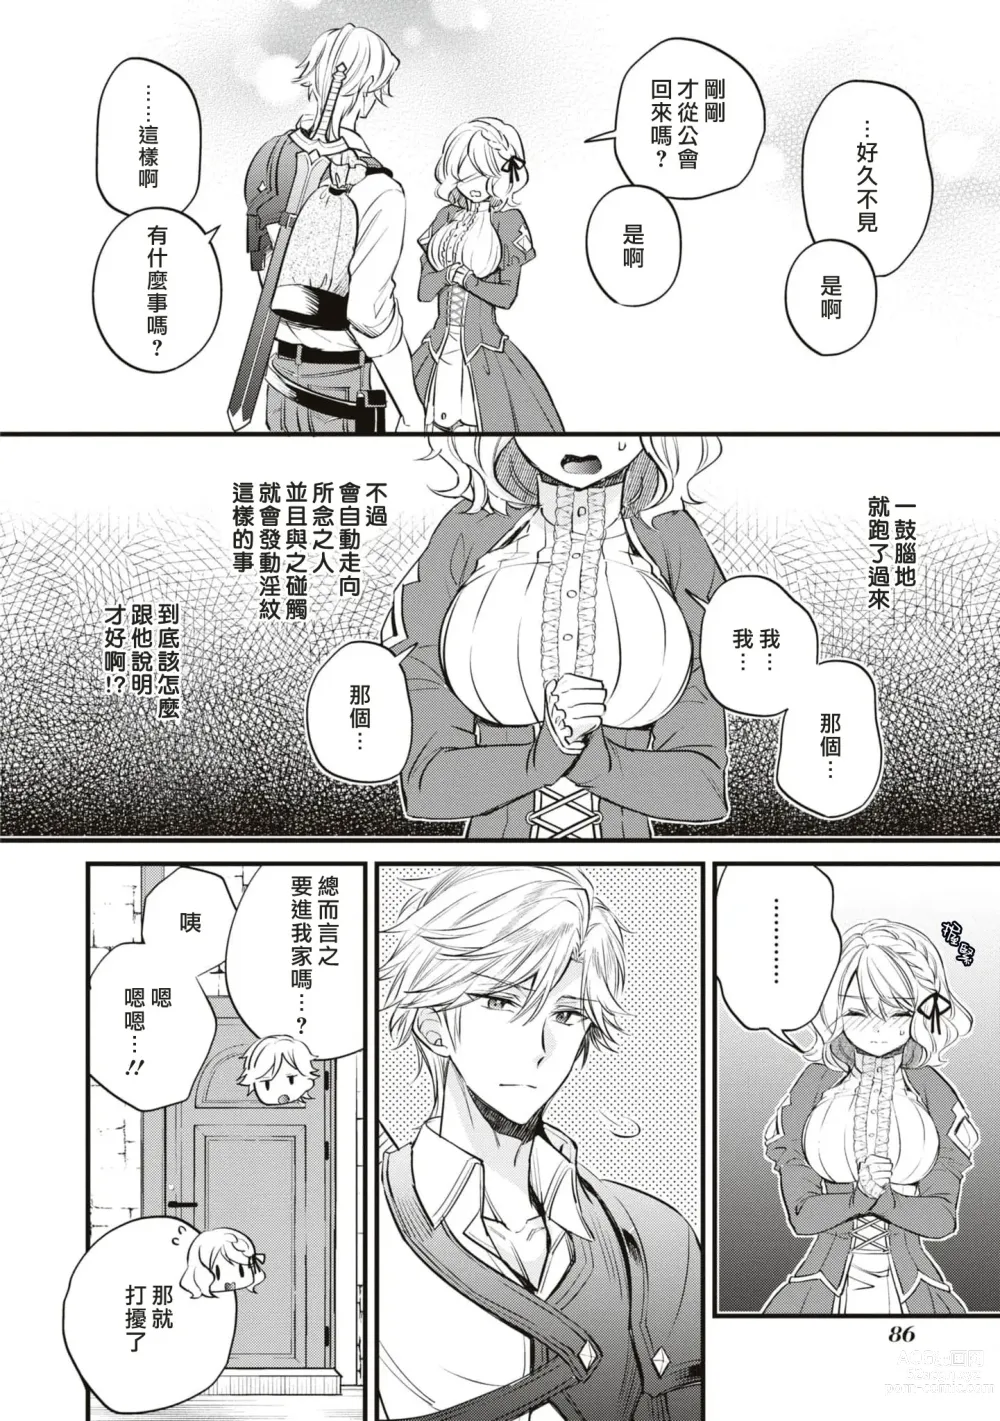 Page 9 of manga 不经意间帮助过的魔女向我报恩，所以被下了会自动朝喜欢的人走去，并会在碰触他时被施予淫纹的魔法。